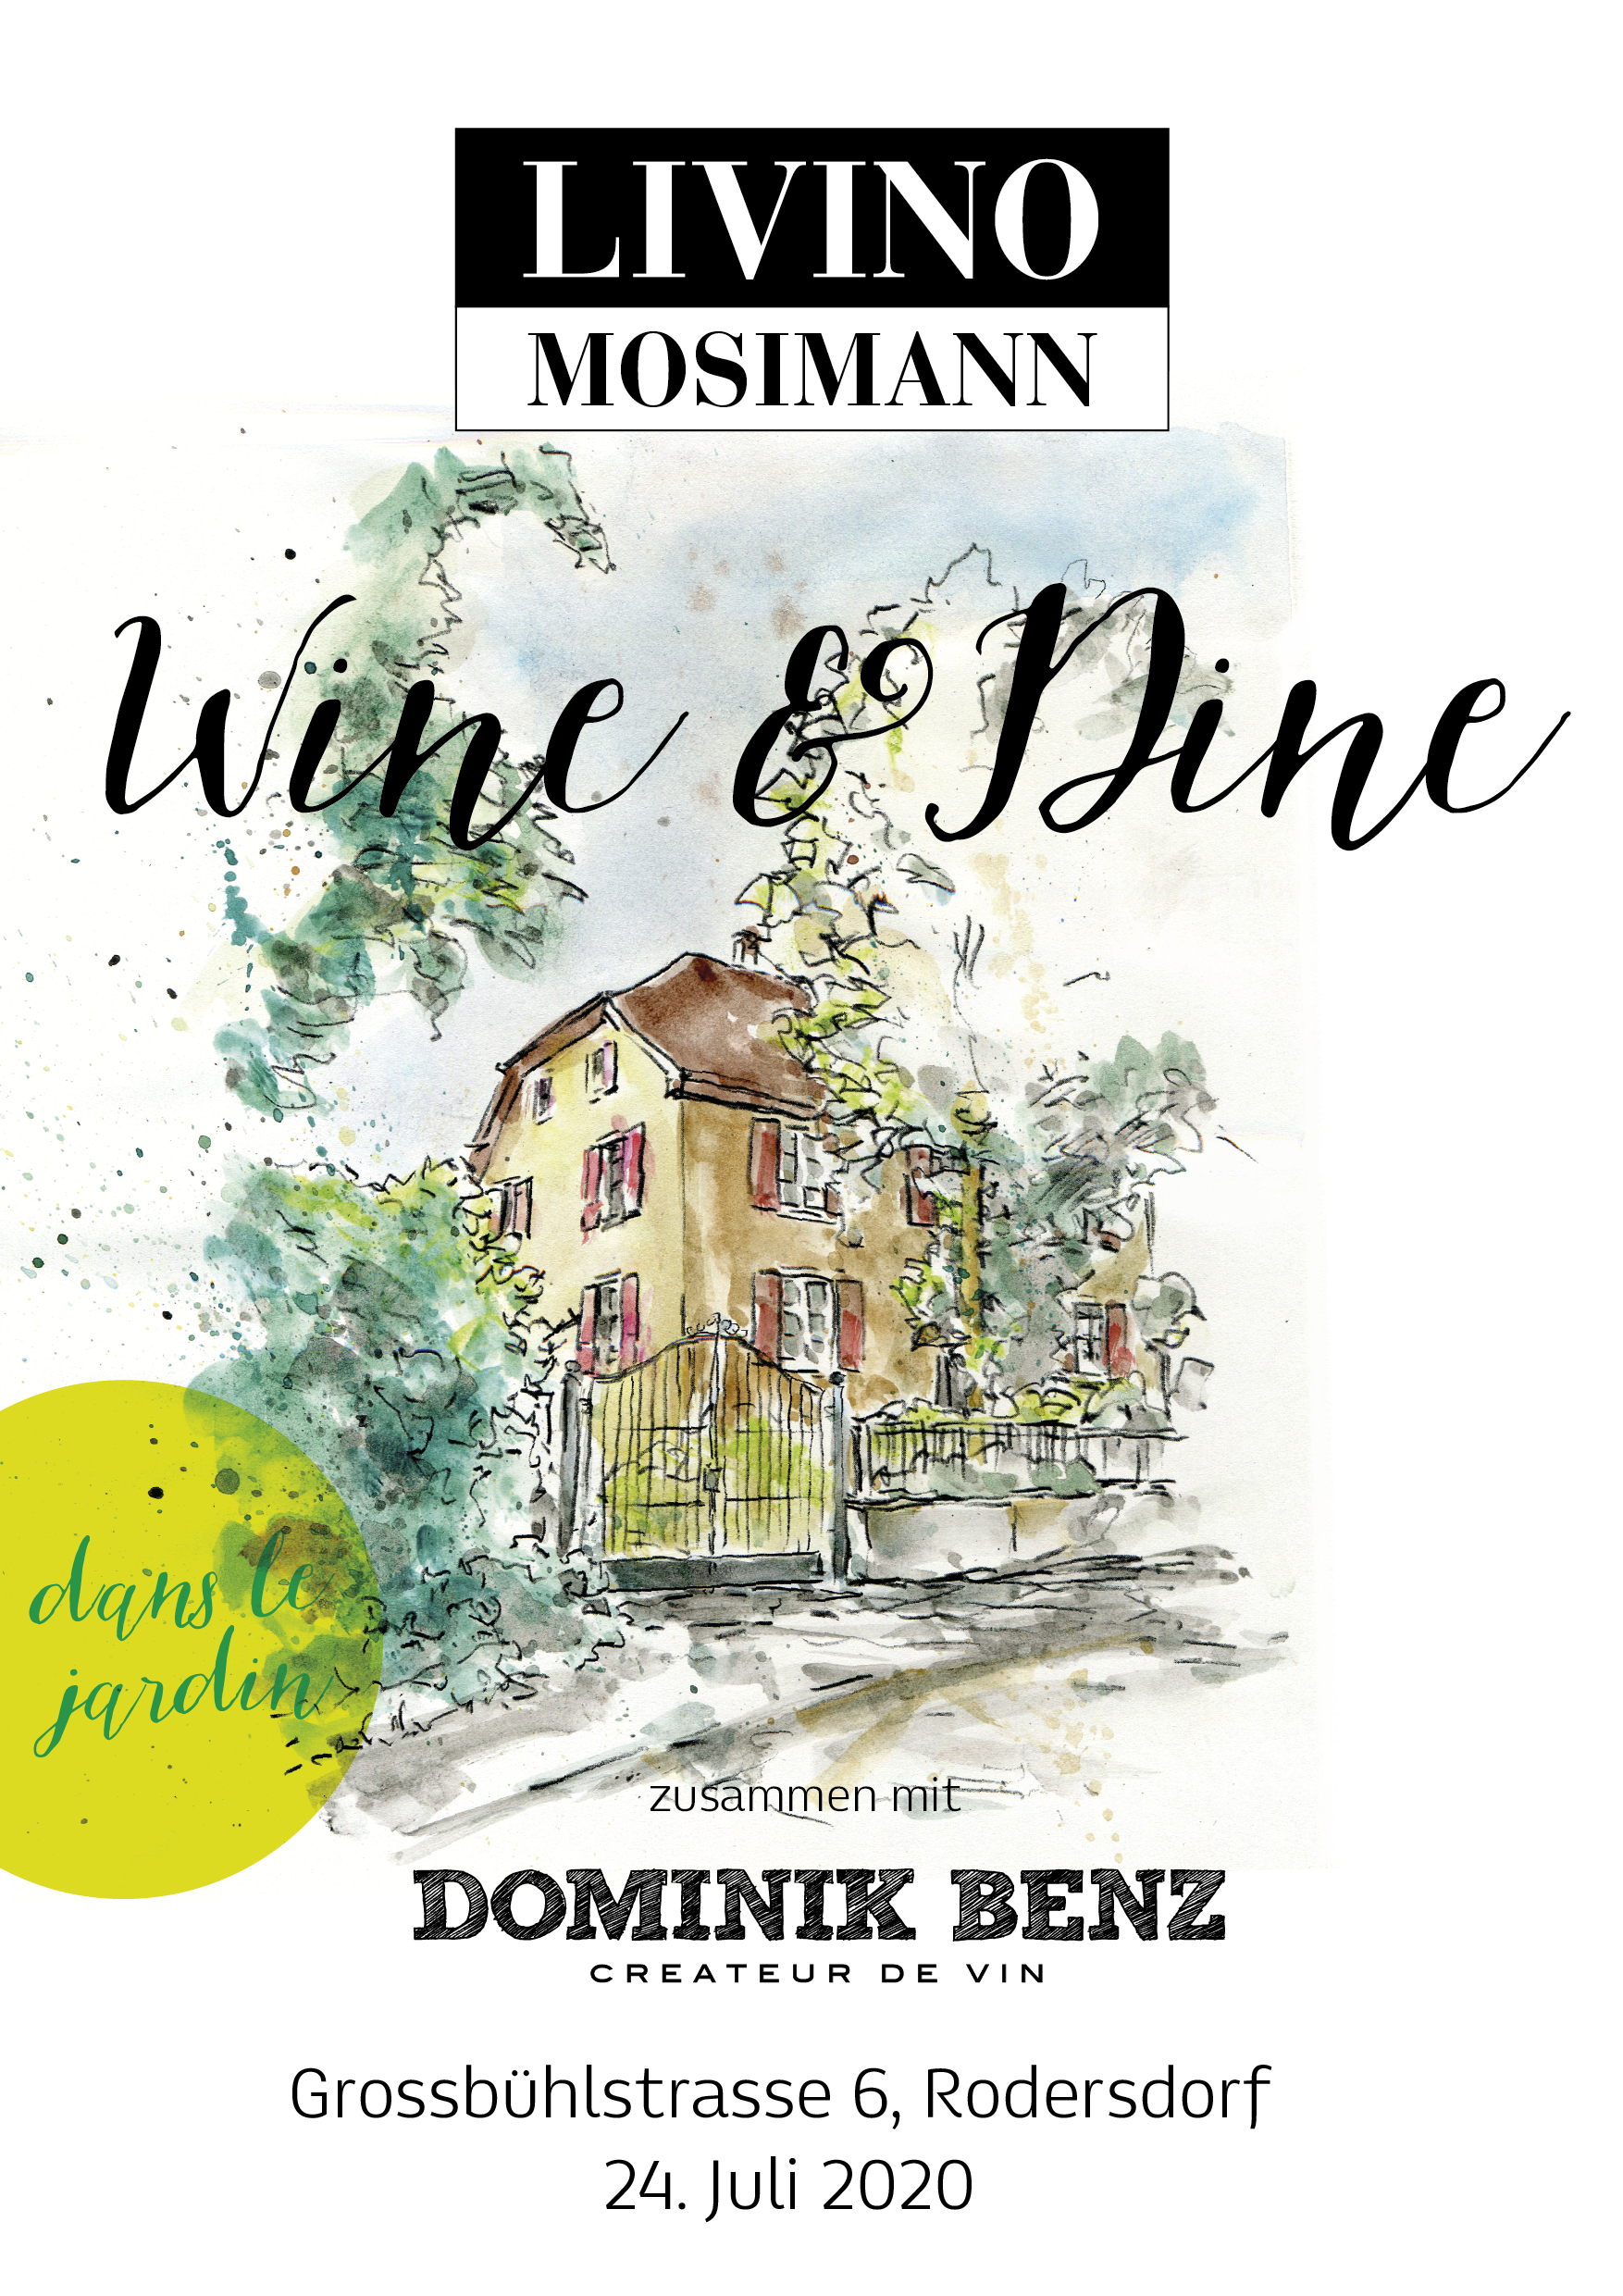 Livino Wine & Dine